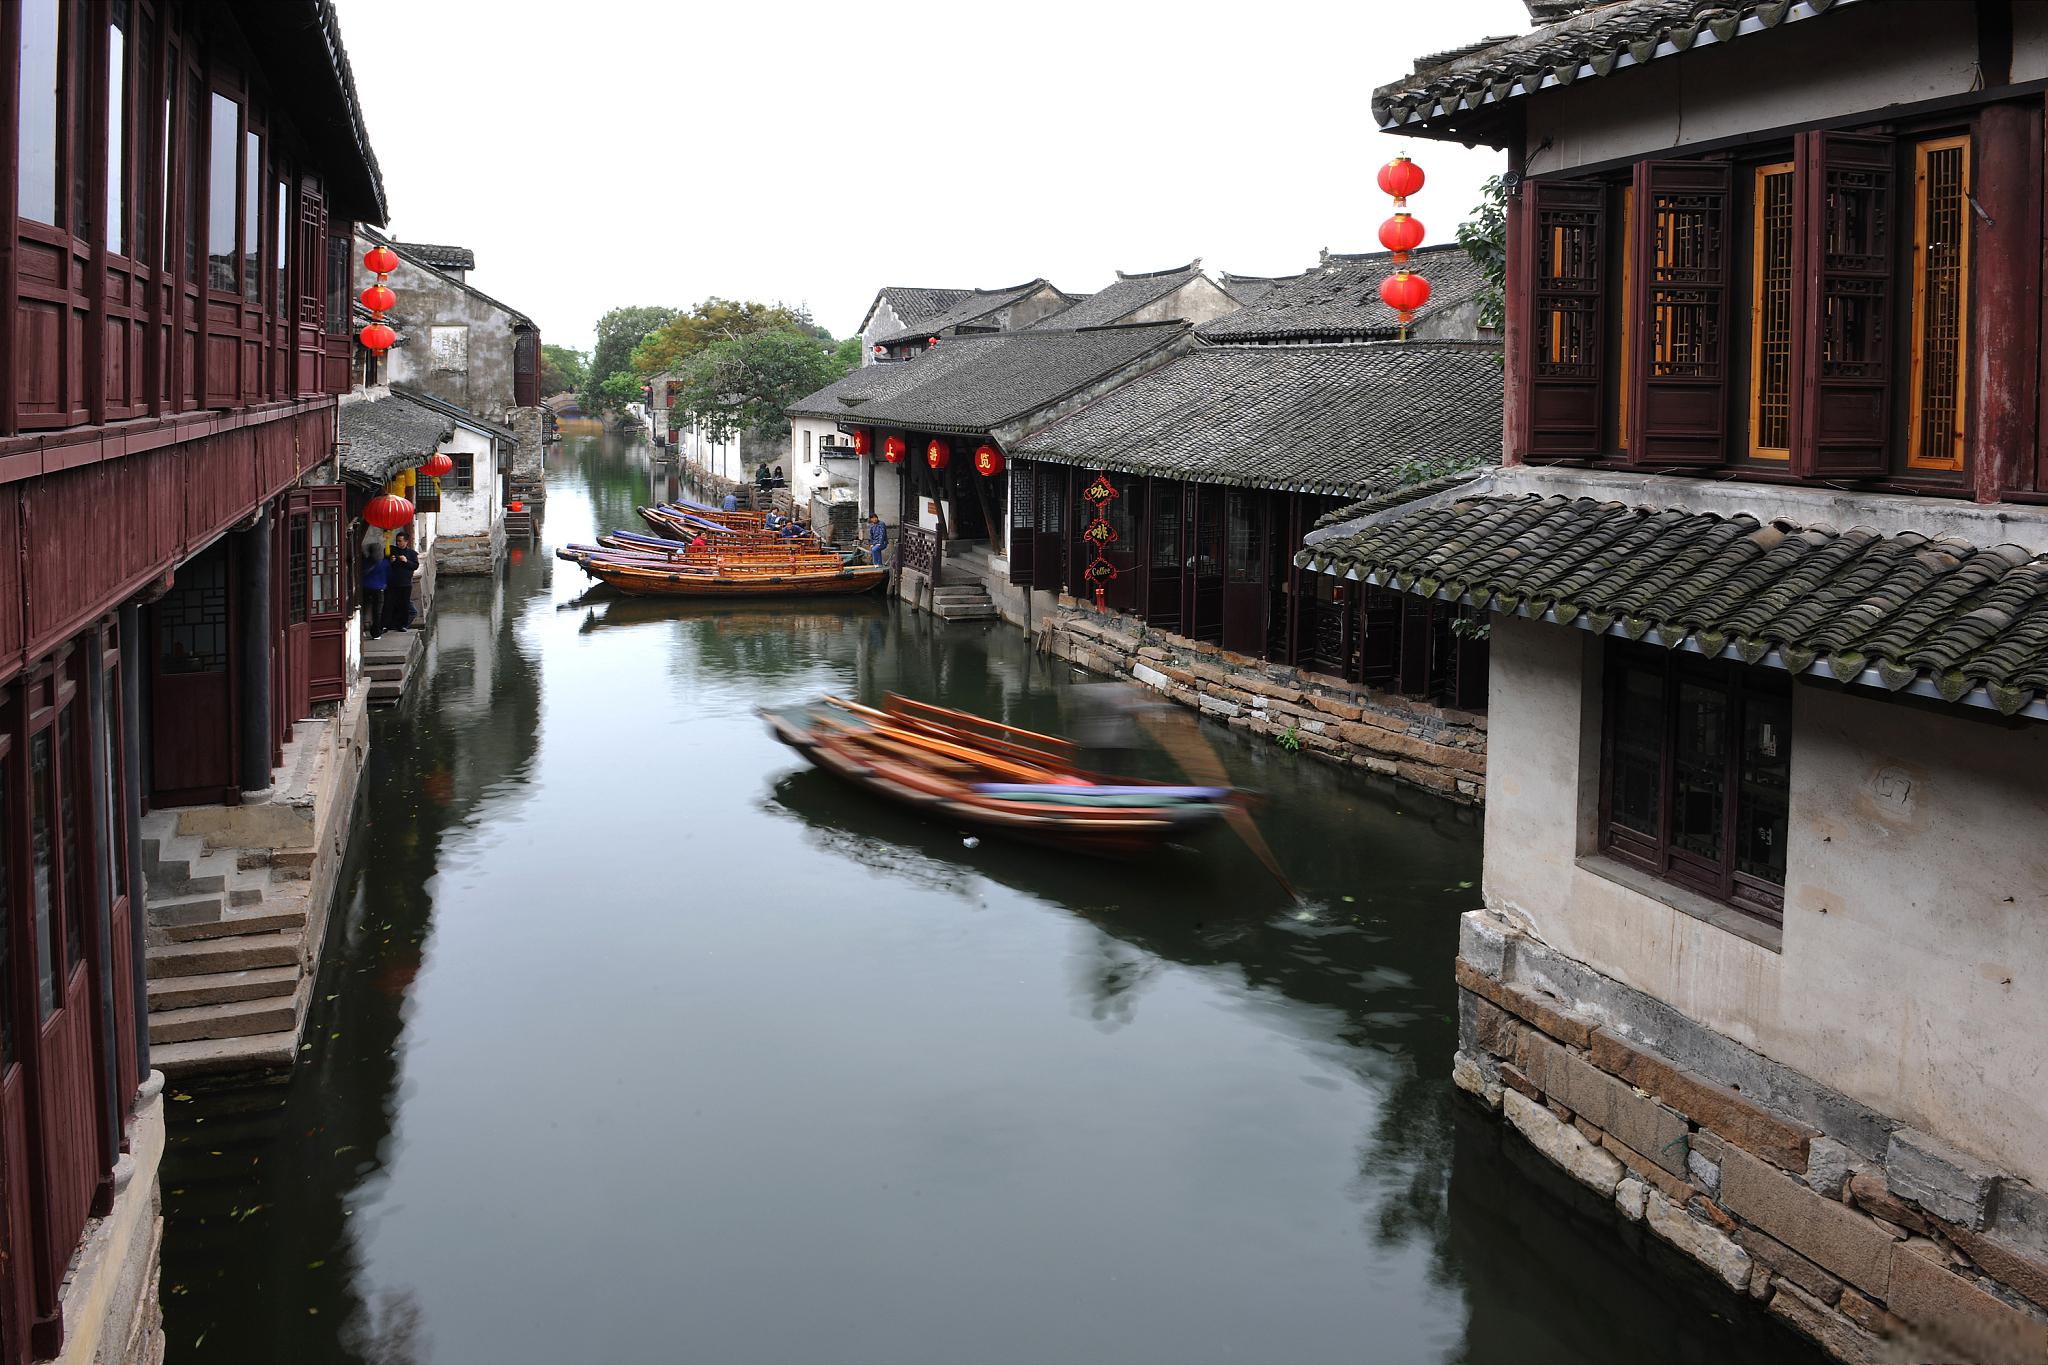 被誉为中国第一水乡,周庄以其水乡独特的建筑风格和悠久的历史文化